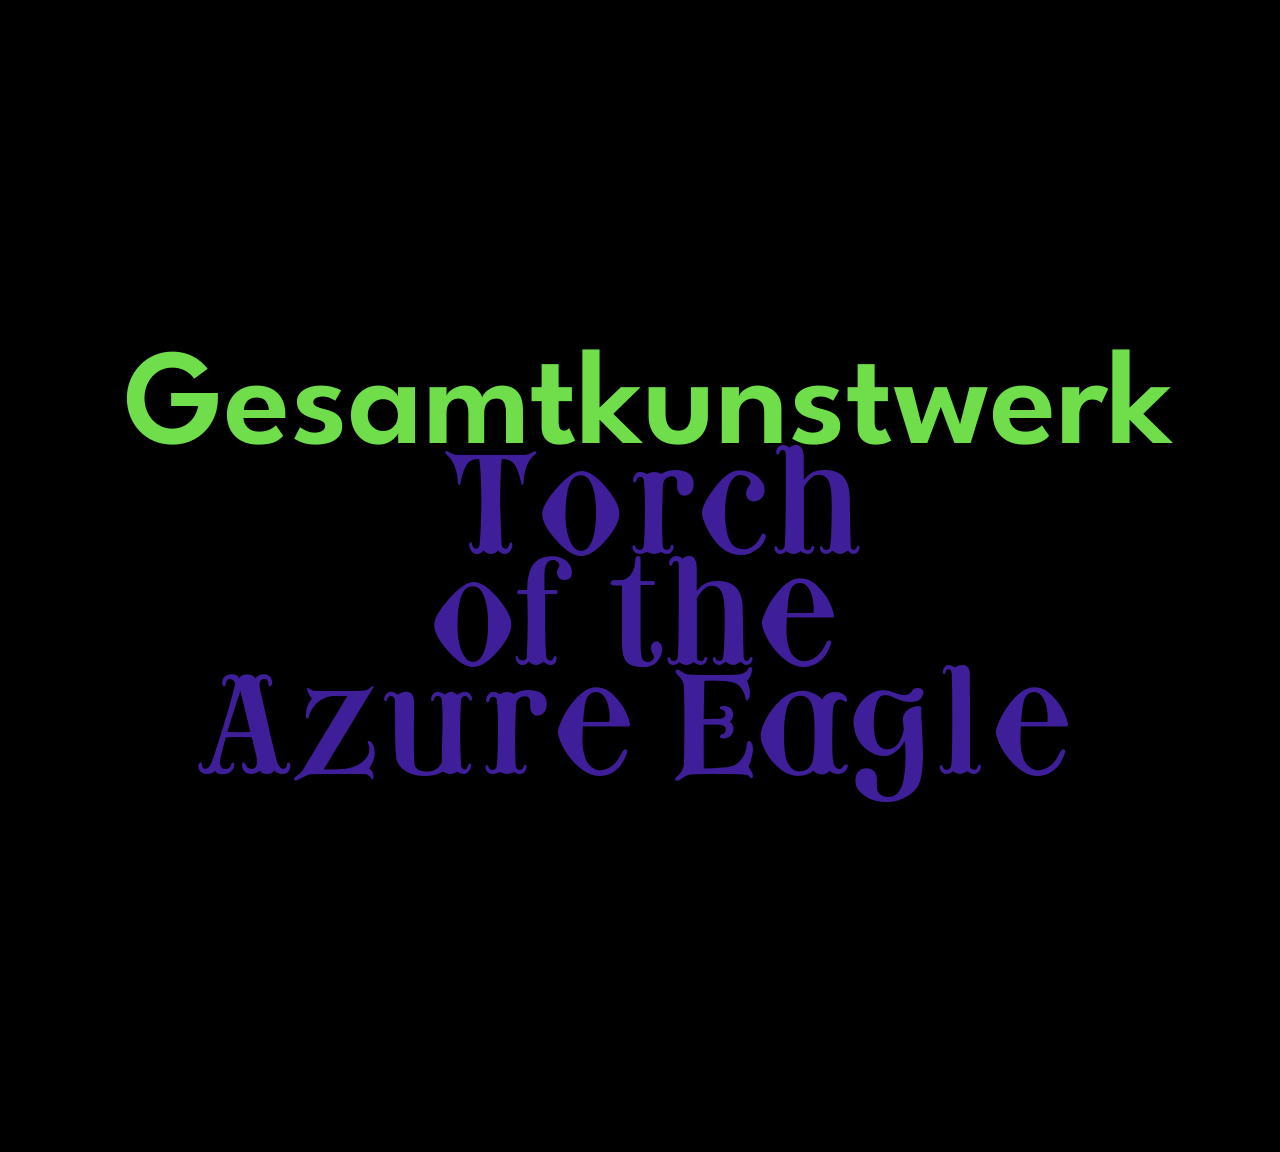 Gesamtkunstwerk: Torch of the Azure Eagle